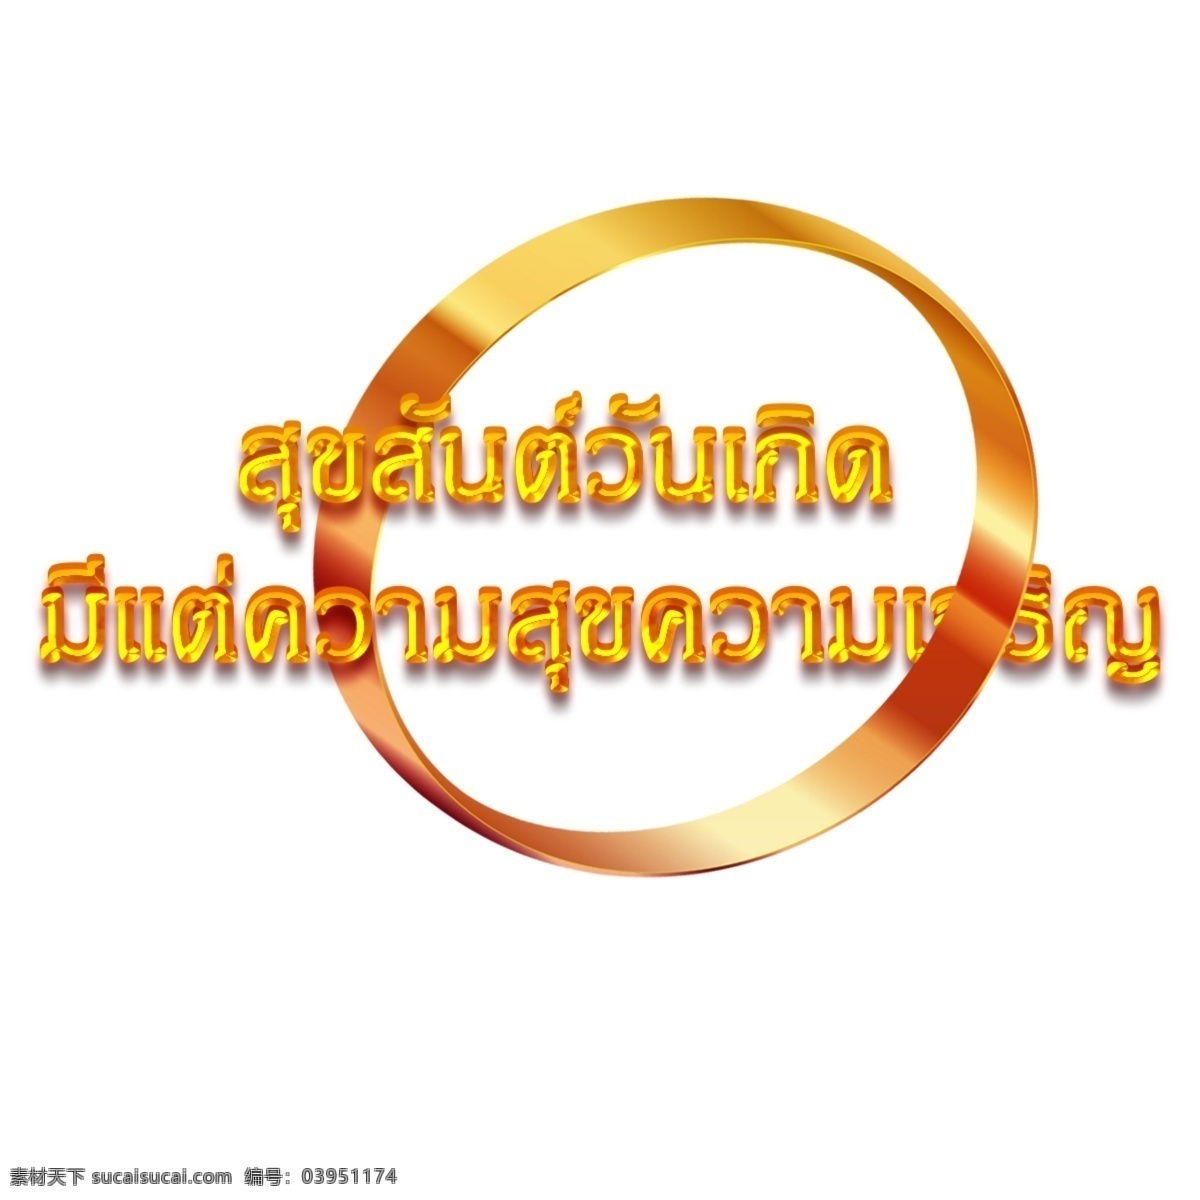 泰国 金 圈 橙色 字体 生日 快乐 幸福 繁荣 梯度 生日快乐 灵魂的影子 环 金属